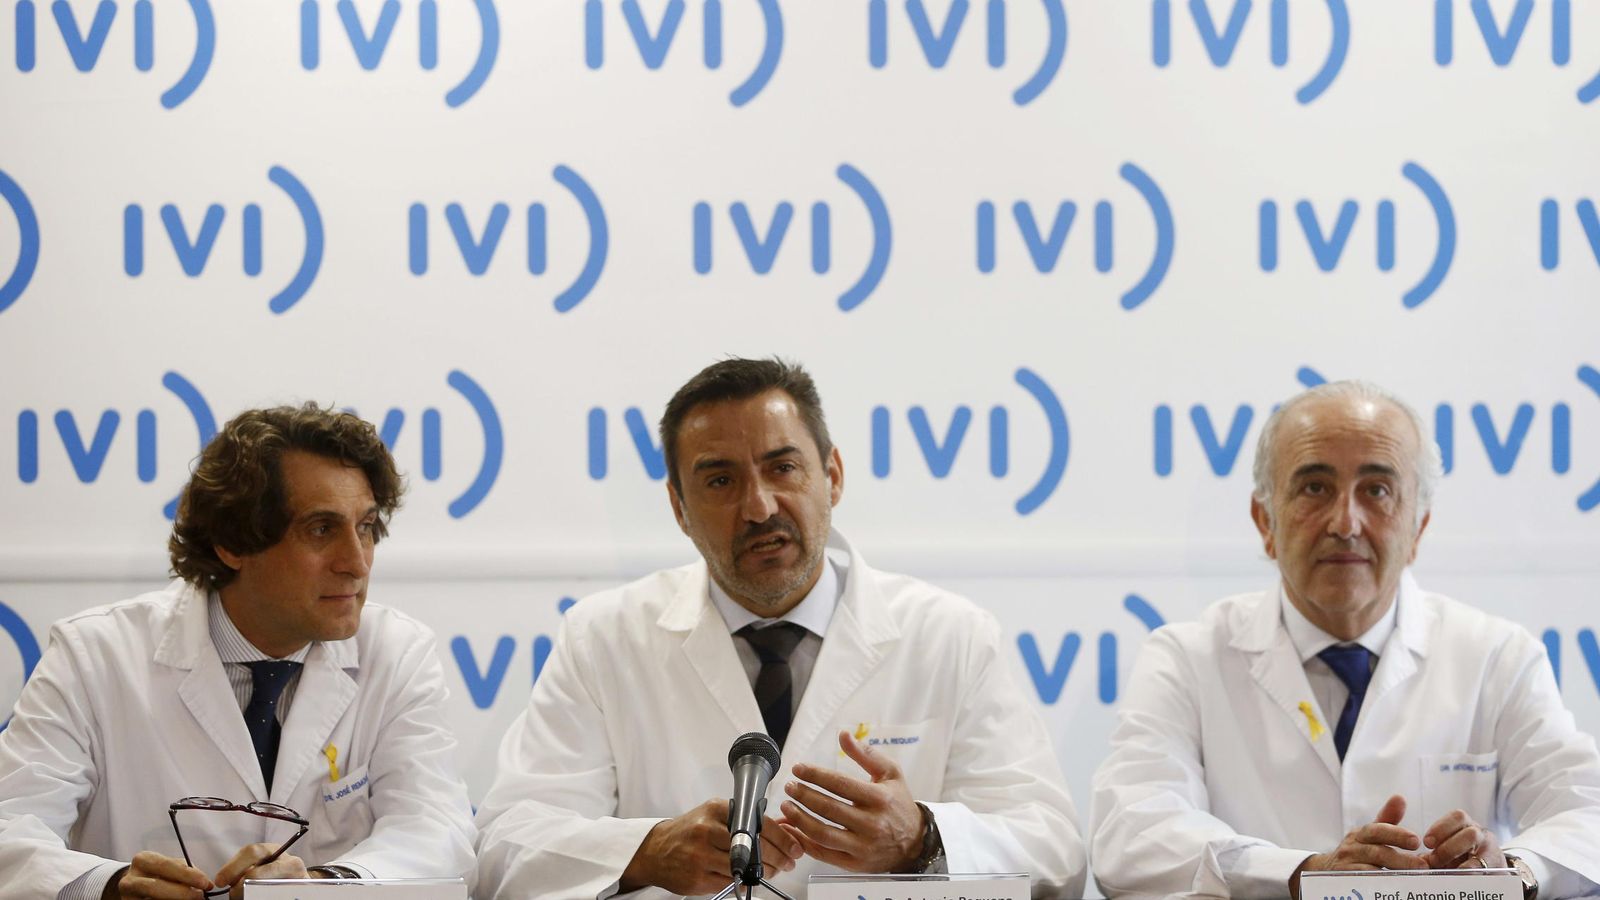 Foto: Los presidentes del grupo IVI, José Remohí (i) y Antonio Pellicer (d), y el director general médico, Antonio Requena (c). (EFE)